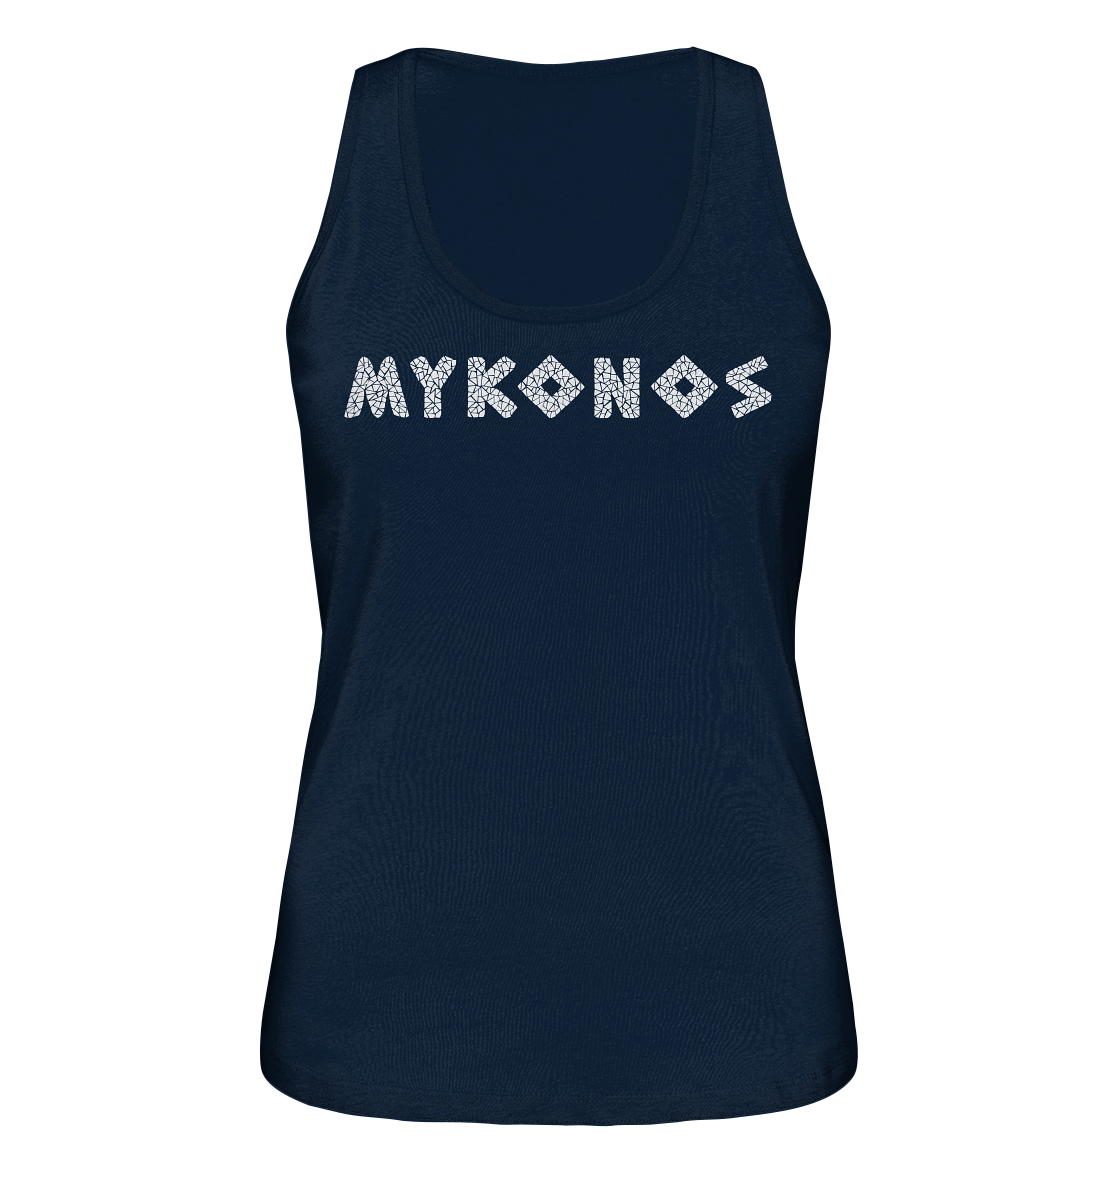 Mykonos Mosaik - Ladies Organic Tank-Top